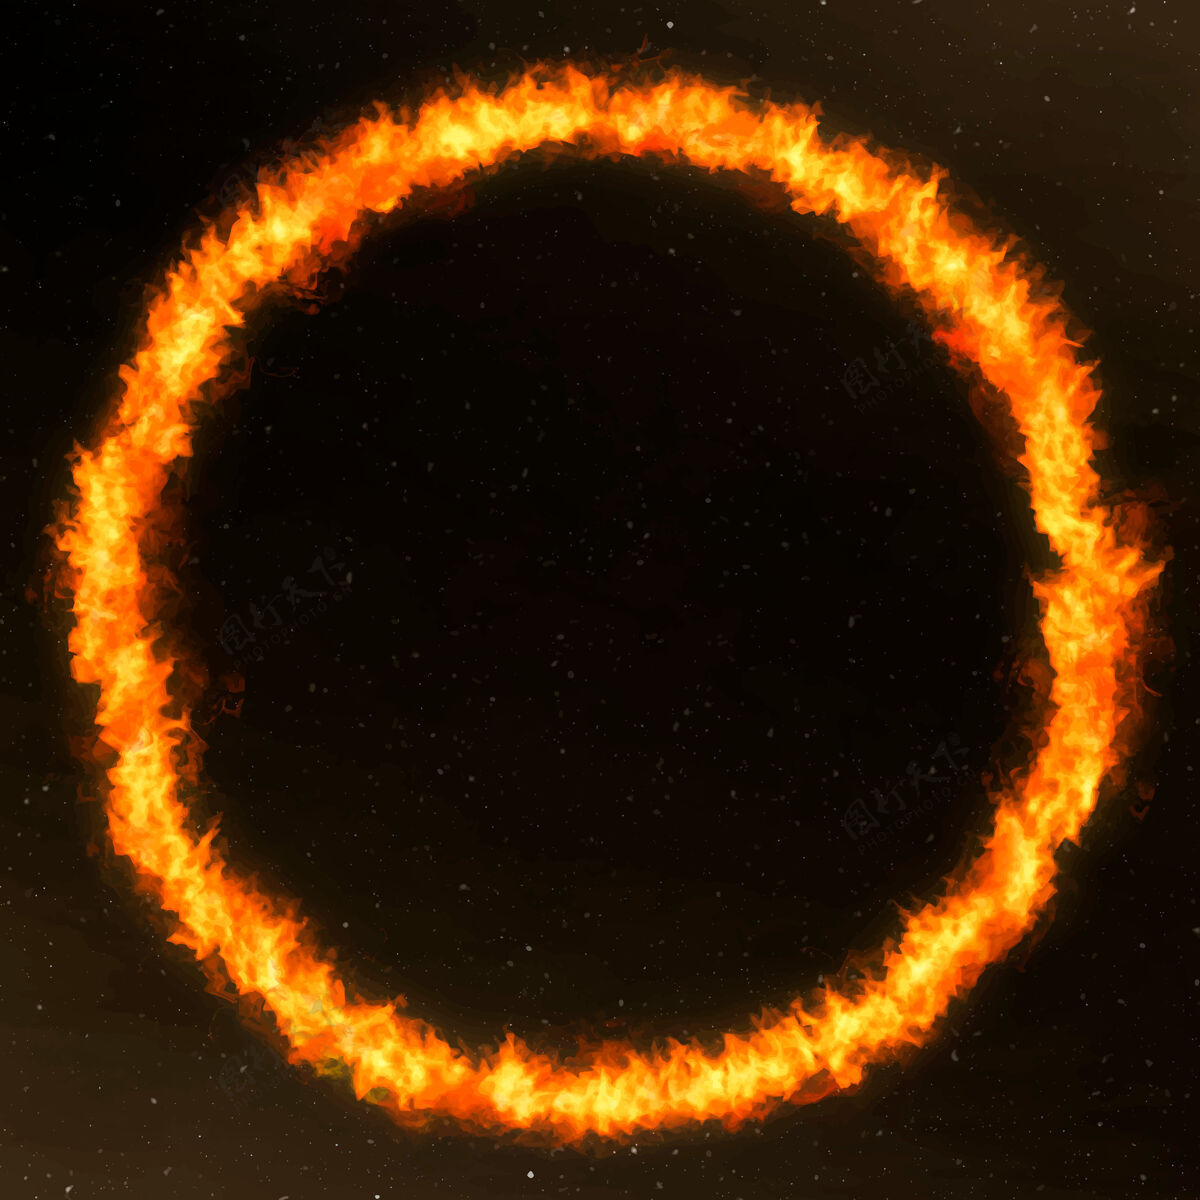 圆圈戏剧性的橙色圈火框架形状橙色火焰火焰